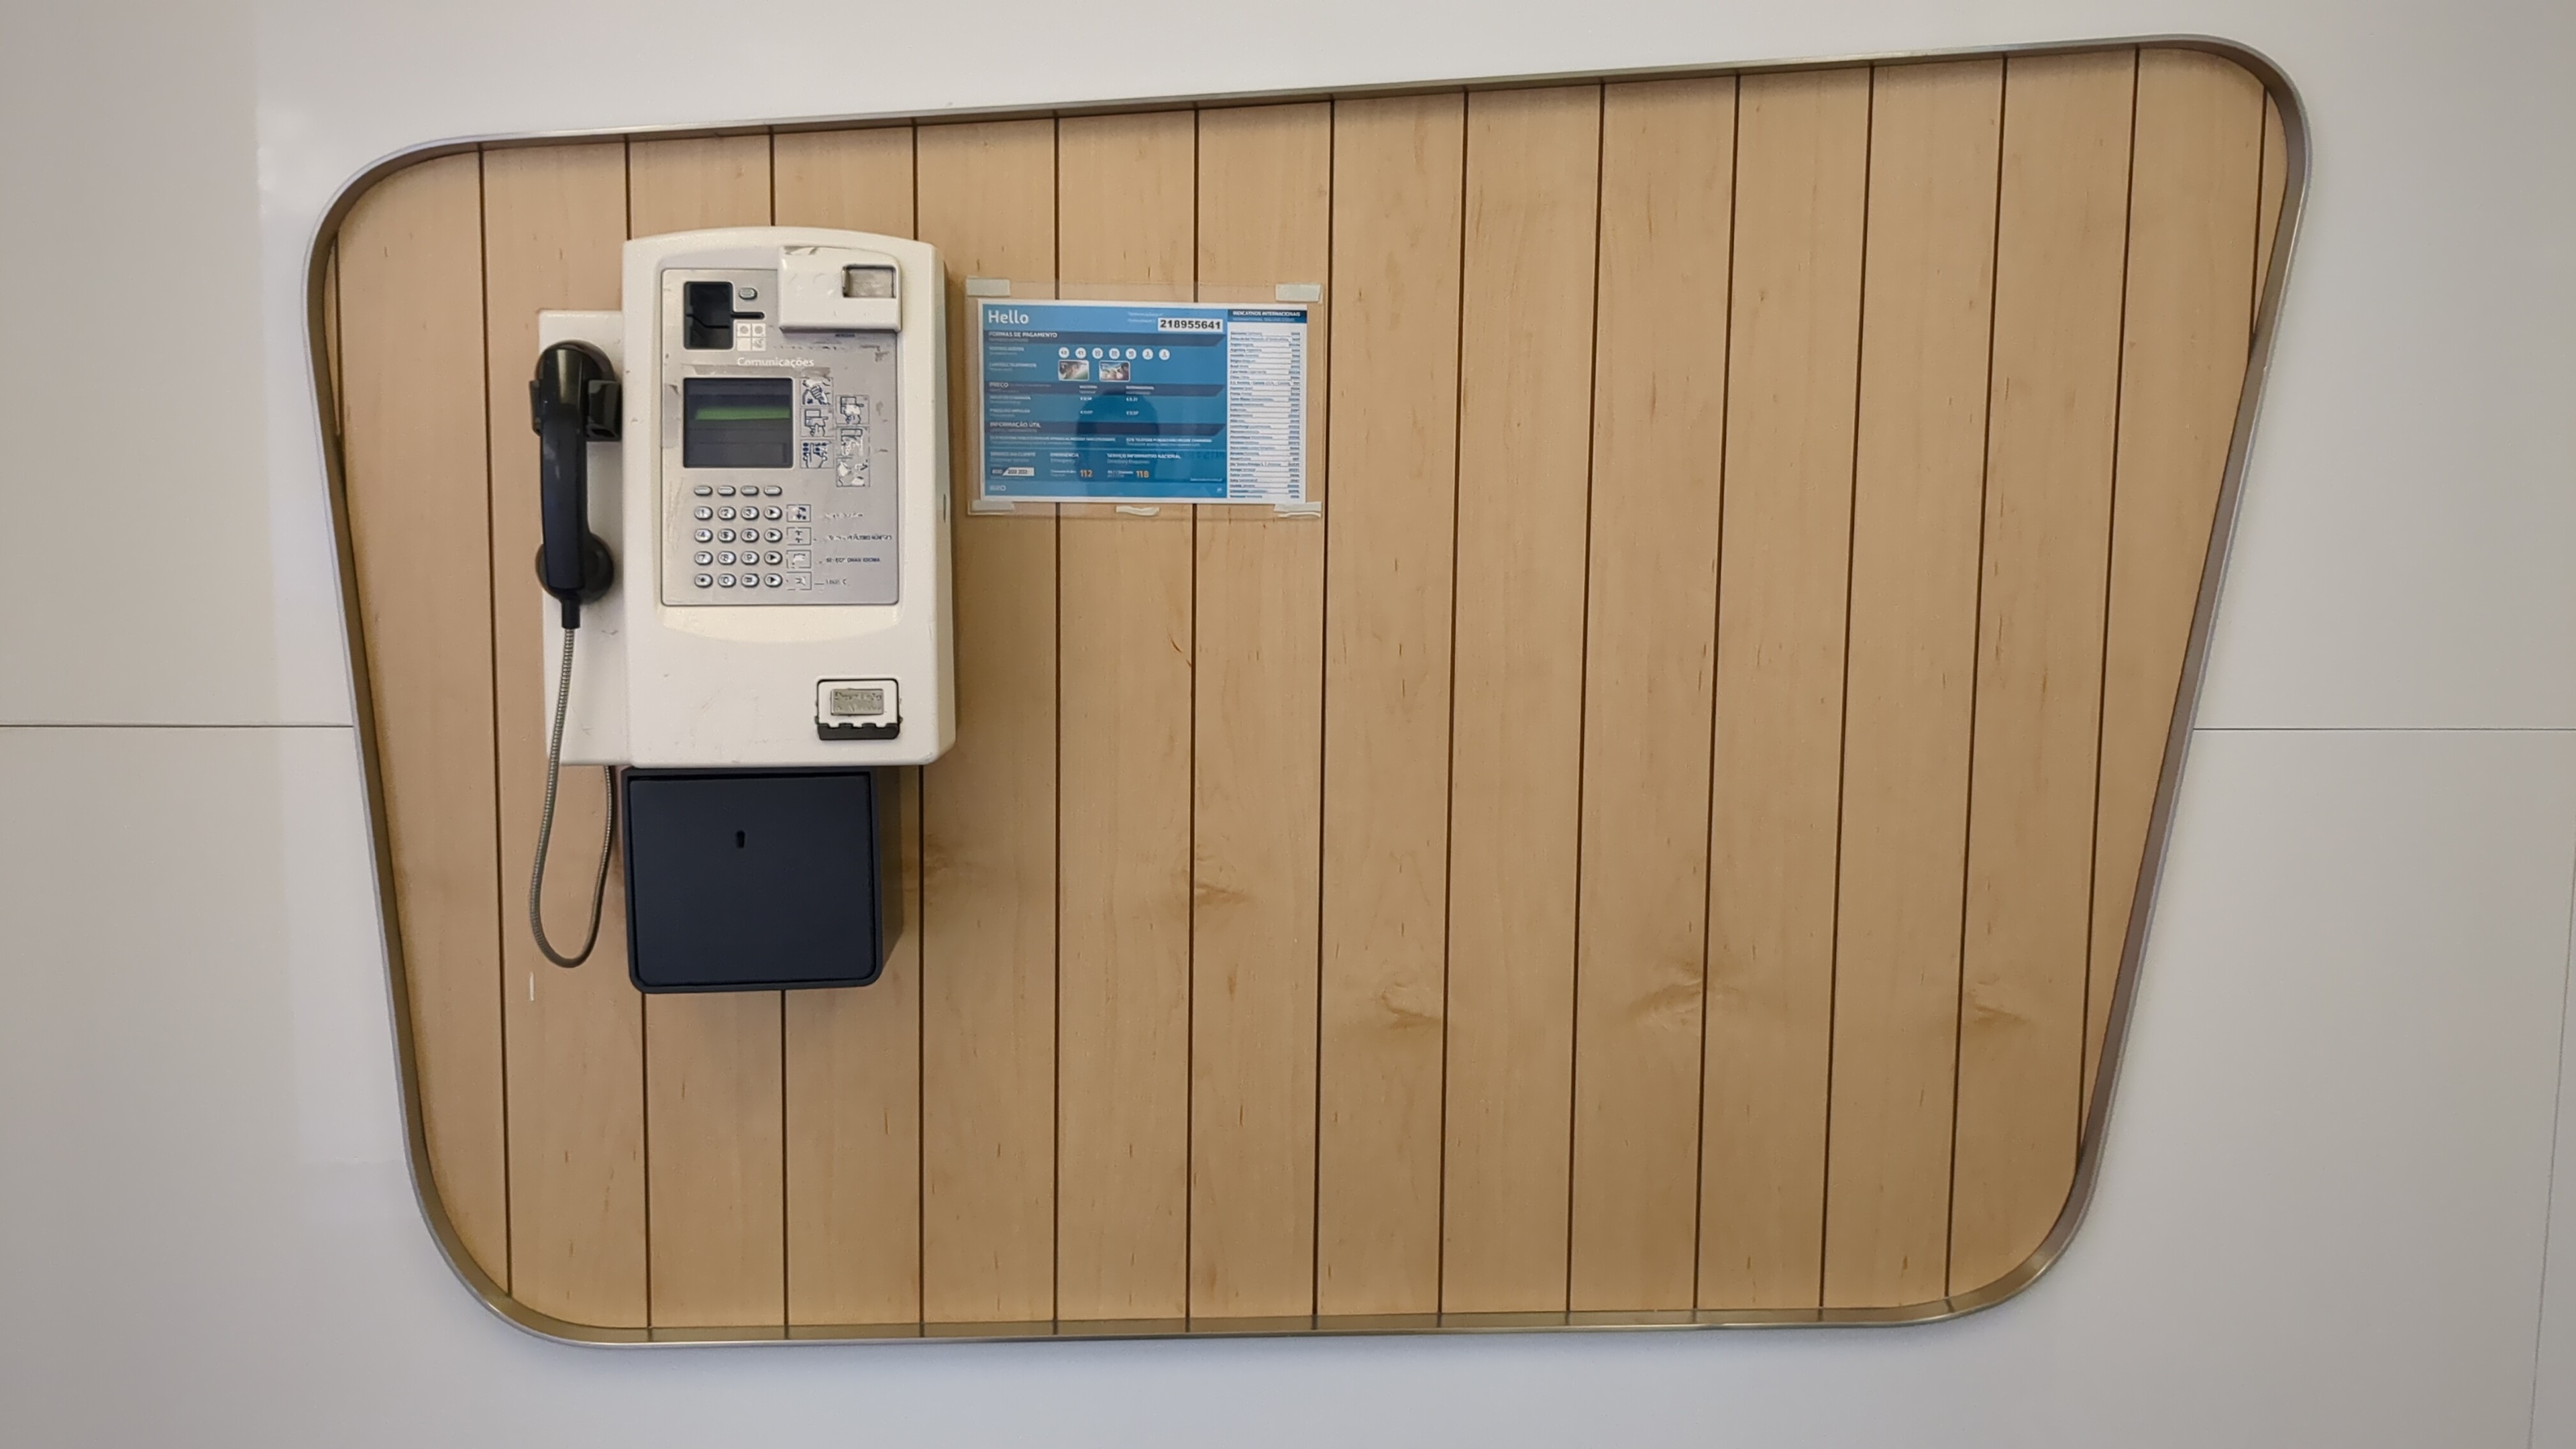 Telefone público numa parede. A parede é branca mas tem um painel de madeira clara composto por várias ripas verticais.